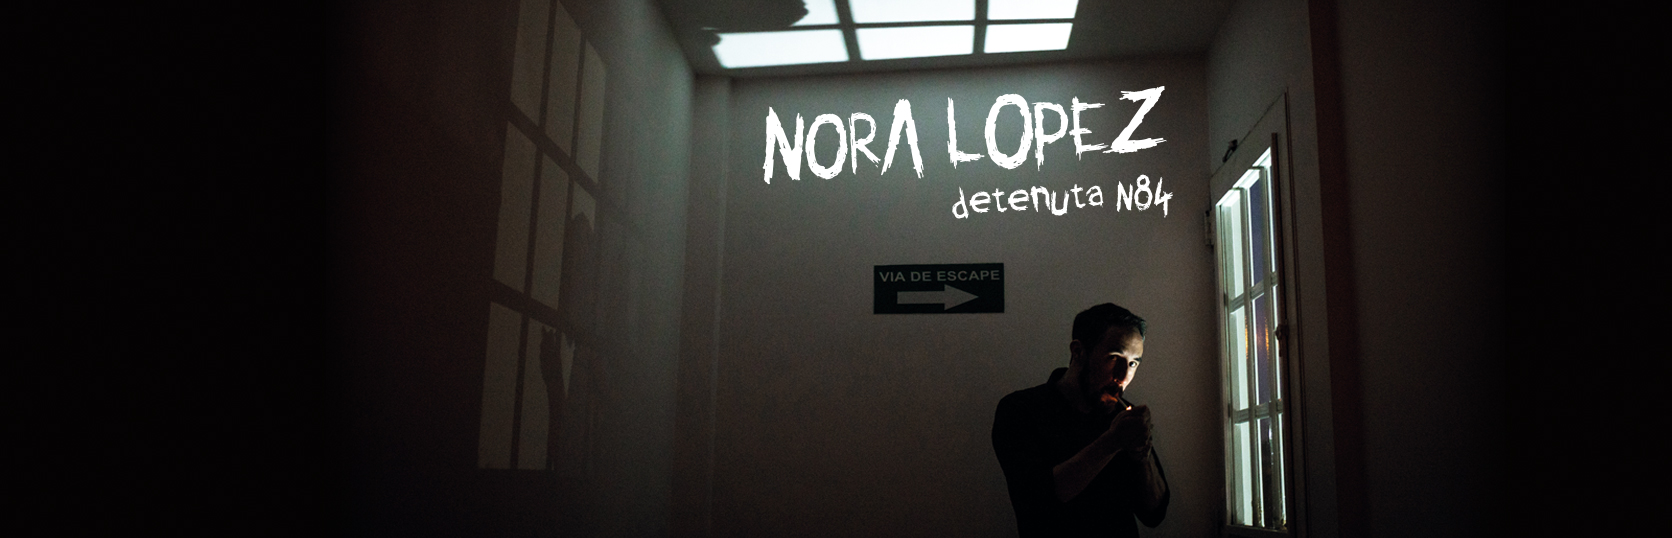 Nicola Viceconti | Nora Lopez | slide home